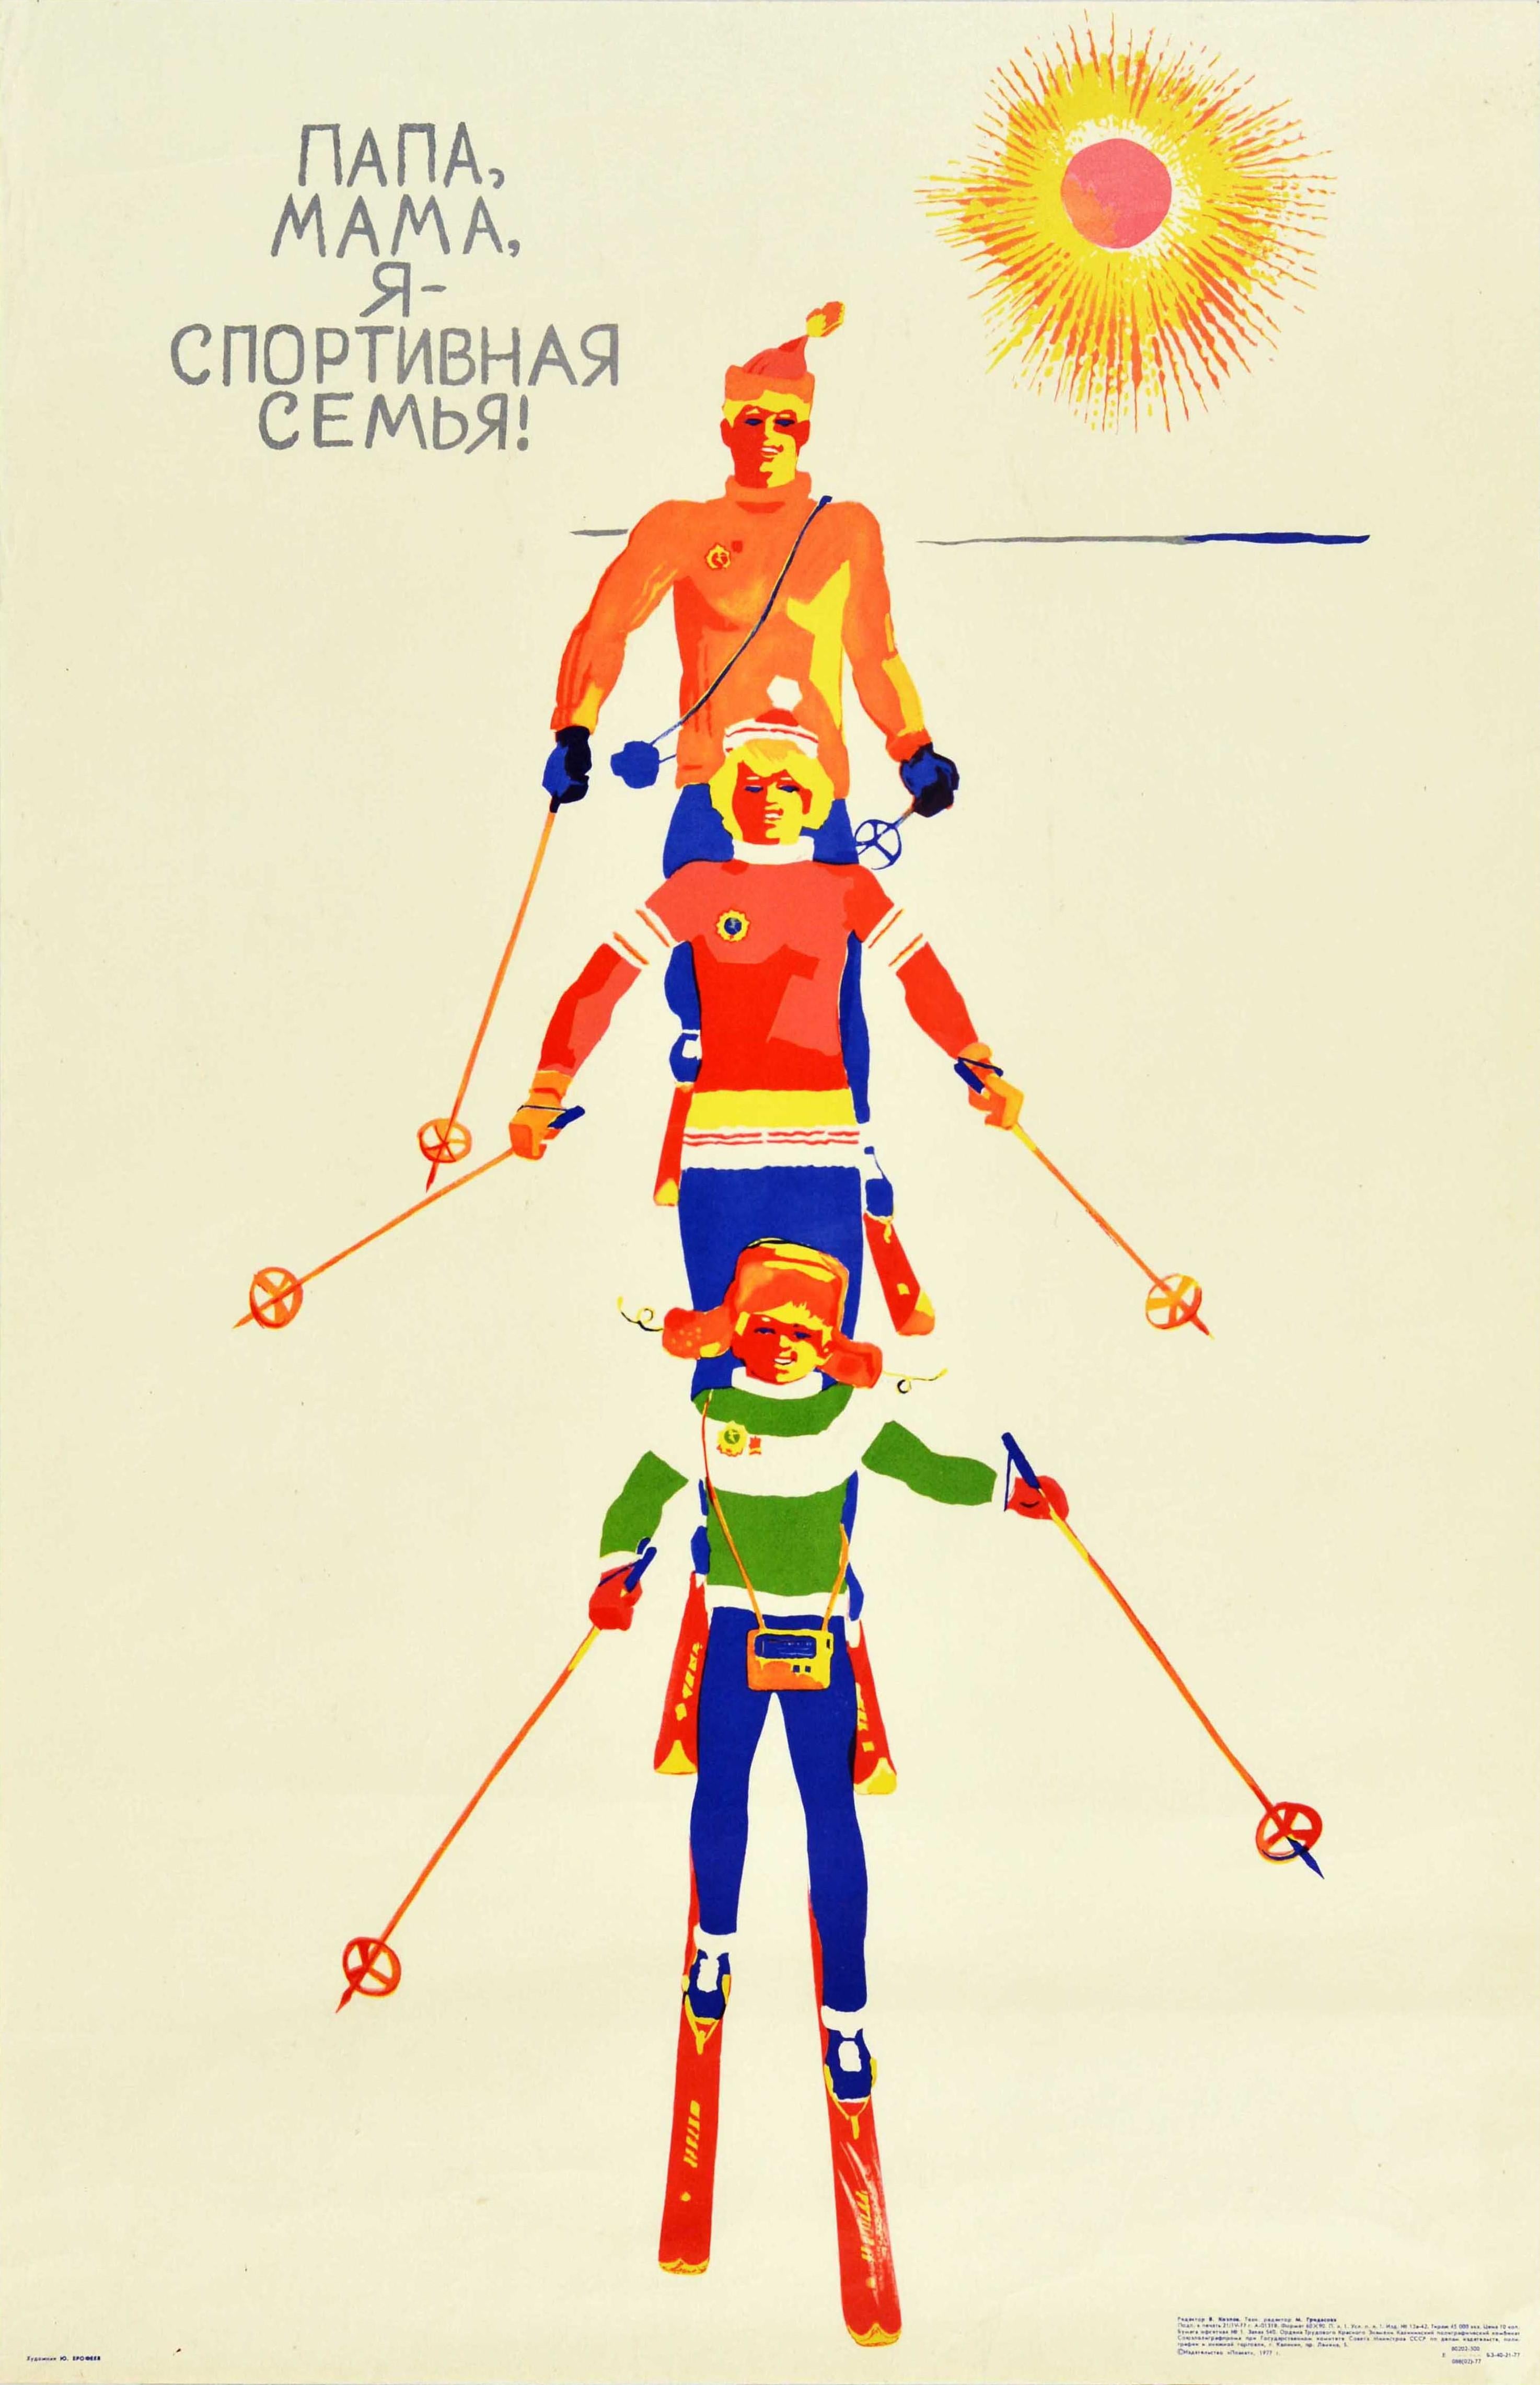 Yerofeyev Print - Original Vintage Soviet Sport Poster Skiing Family USSR Winter Sport